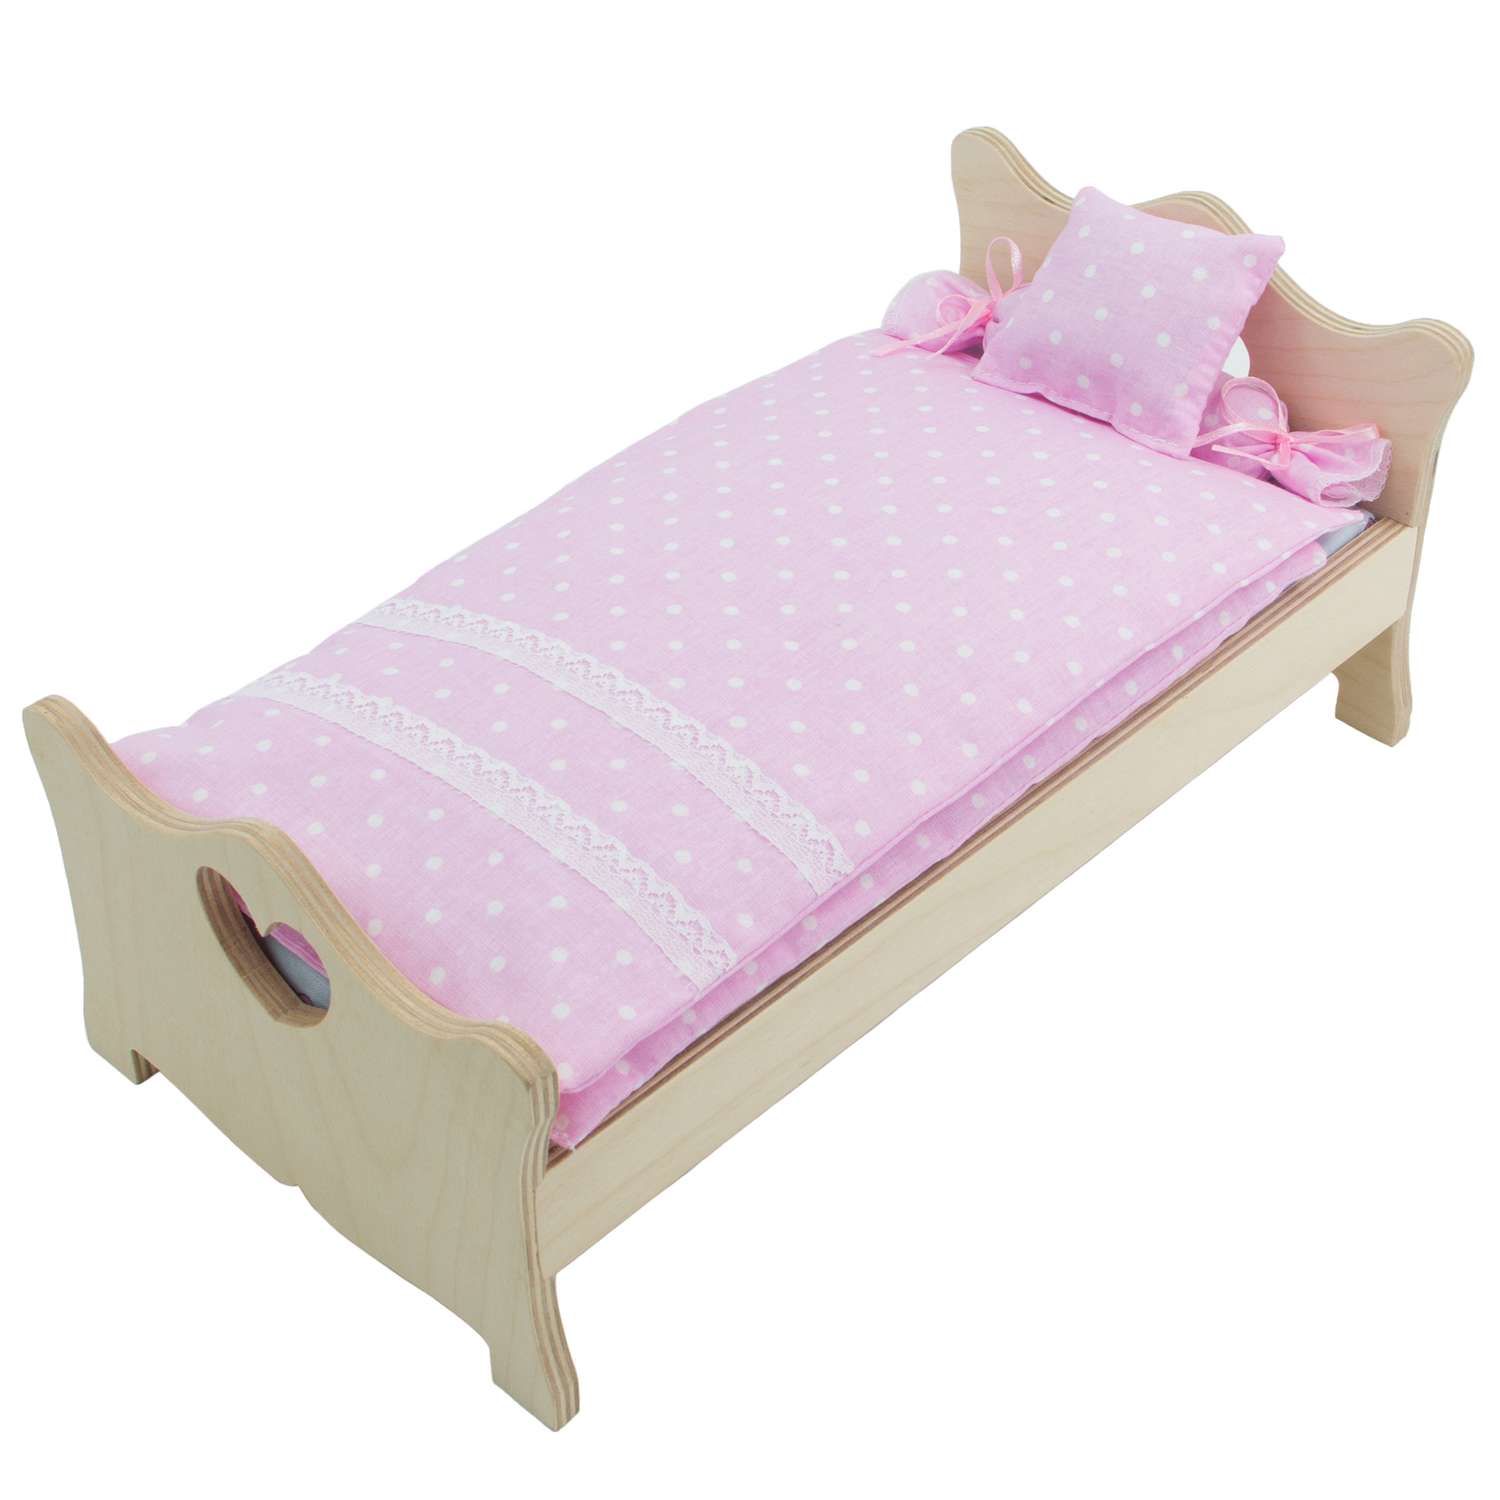 Комлпект постельного белья Модница для куклы 29 см пастельно-розовый 2002пастельно-розовый - фото 5